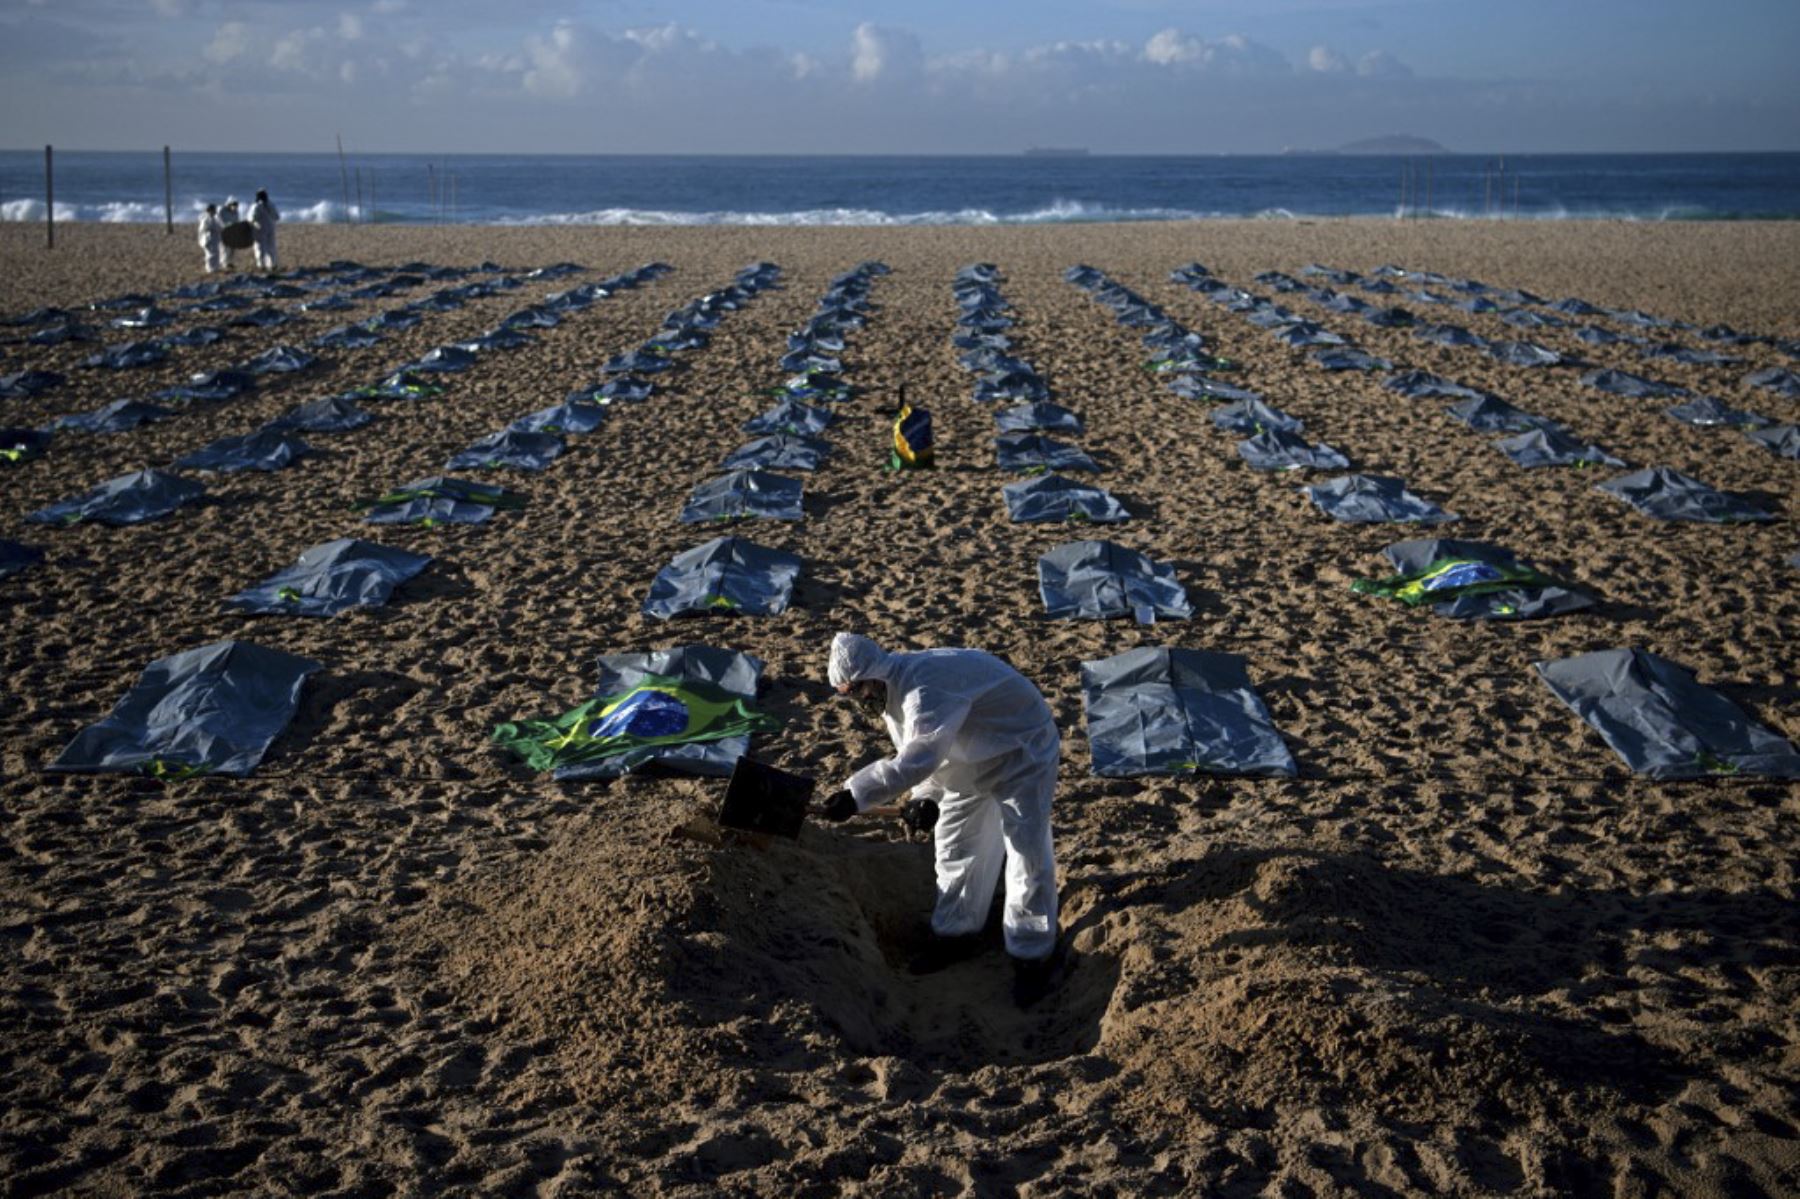 Un manifestante del grupo activista de derechos humanos de Río de Paz cava una tumba simbólica frente a filas de bolsas que simbolizan bolsas para cadáveres en la playa de Copacabana, durante una protesta contra el manejo del gobierno brasileño de la pandemia de coronavirus, en Río de Janeiro. Foto: AFP